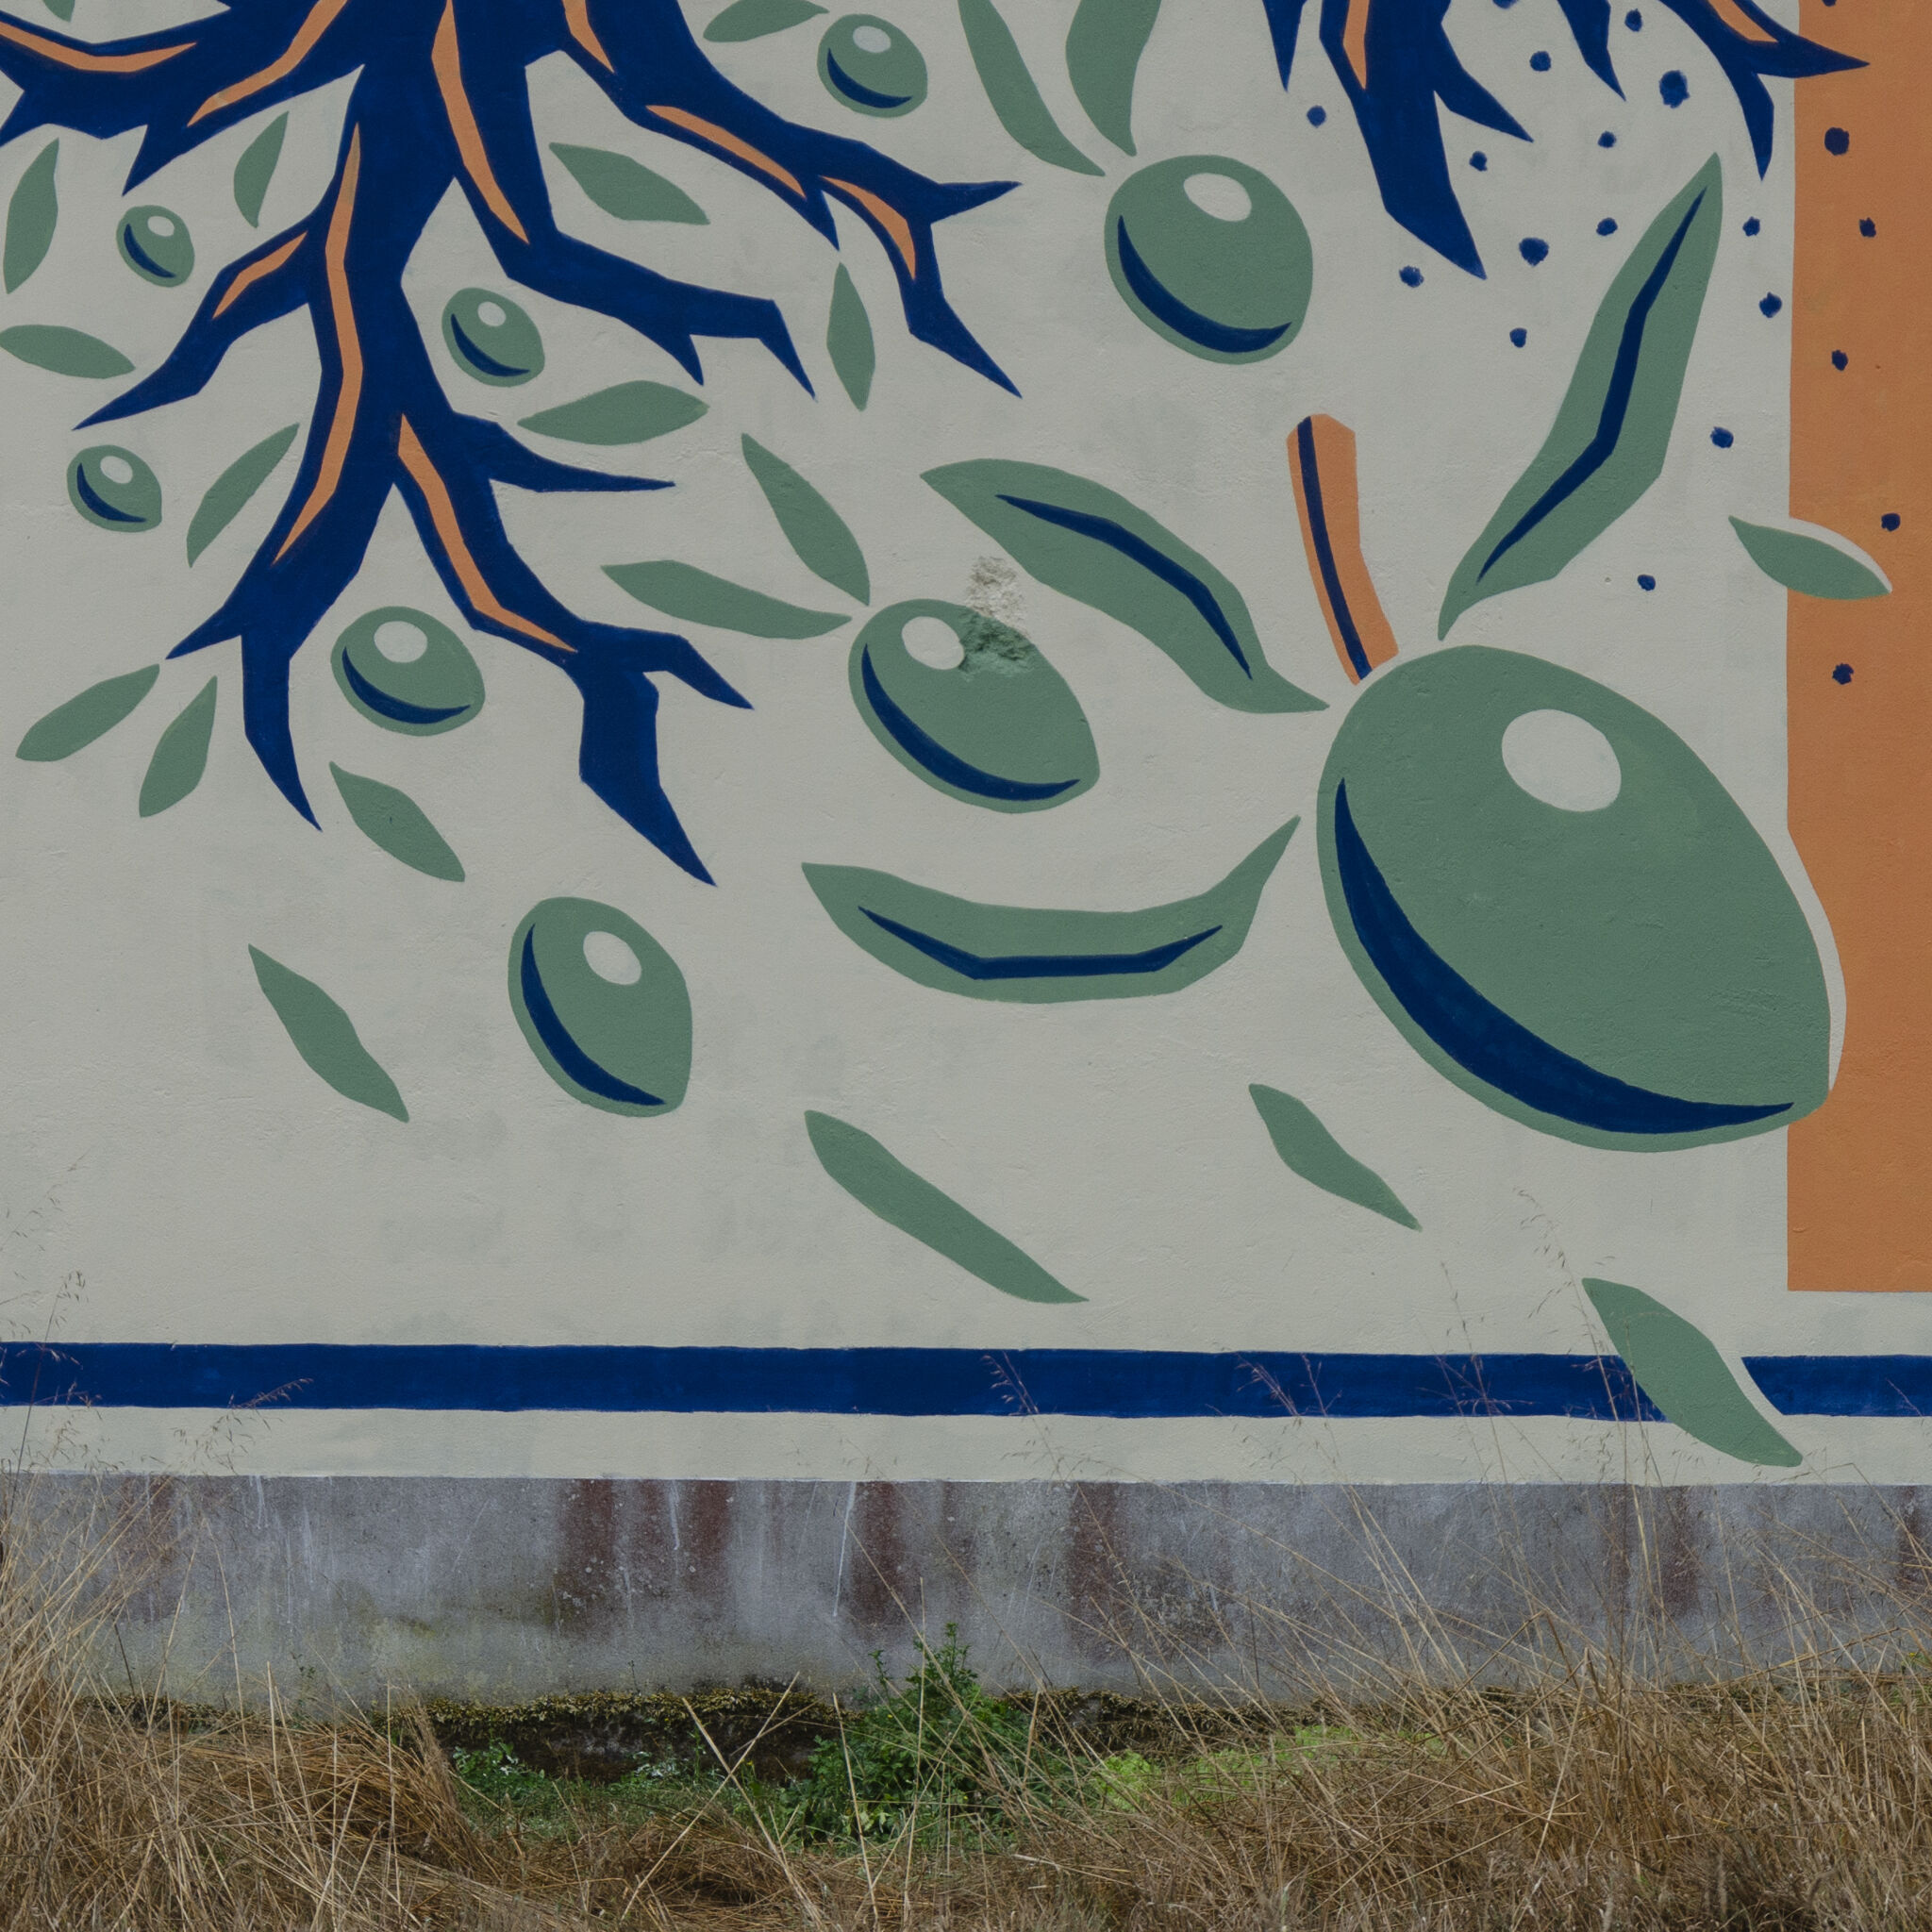 Reskate Studio&mdash;"SOMOS SEMENTE", New wall by RESKATE for DESORDES CREATIVAS 2020, in Ordes (Galicia-Spain)